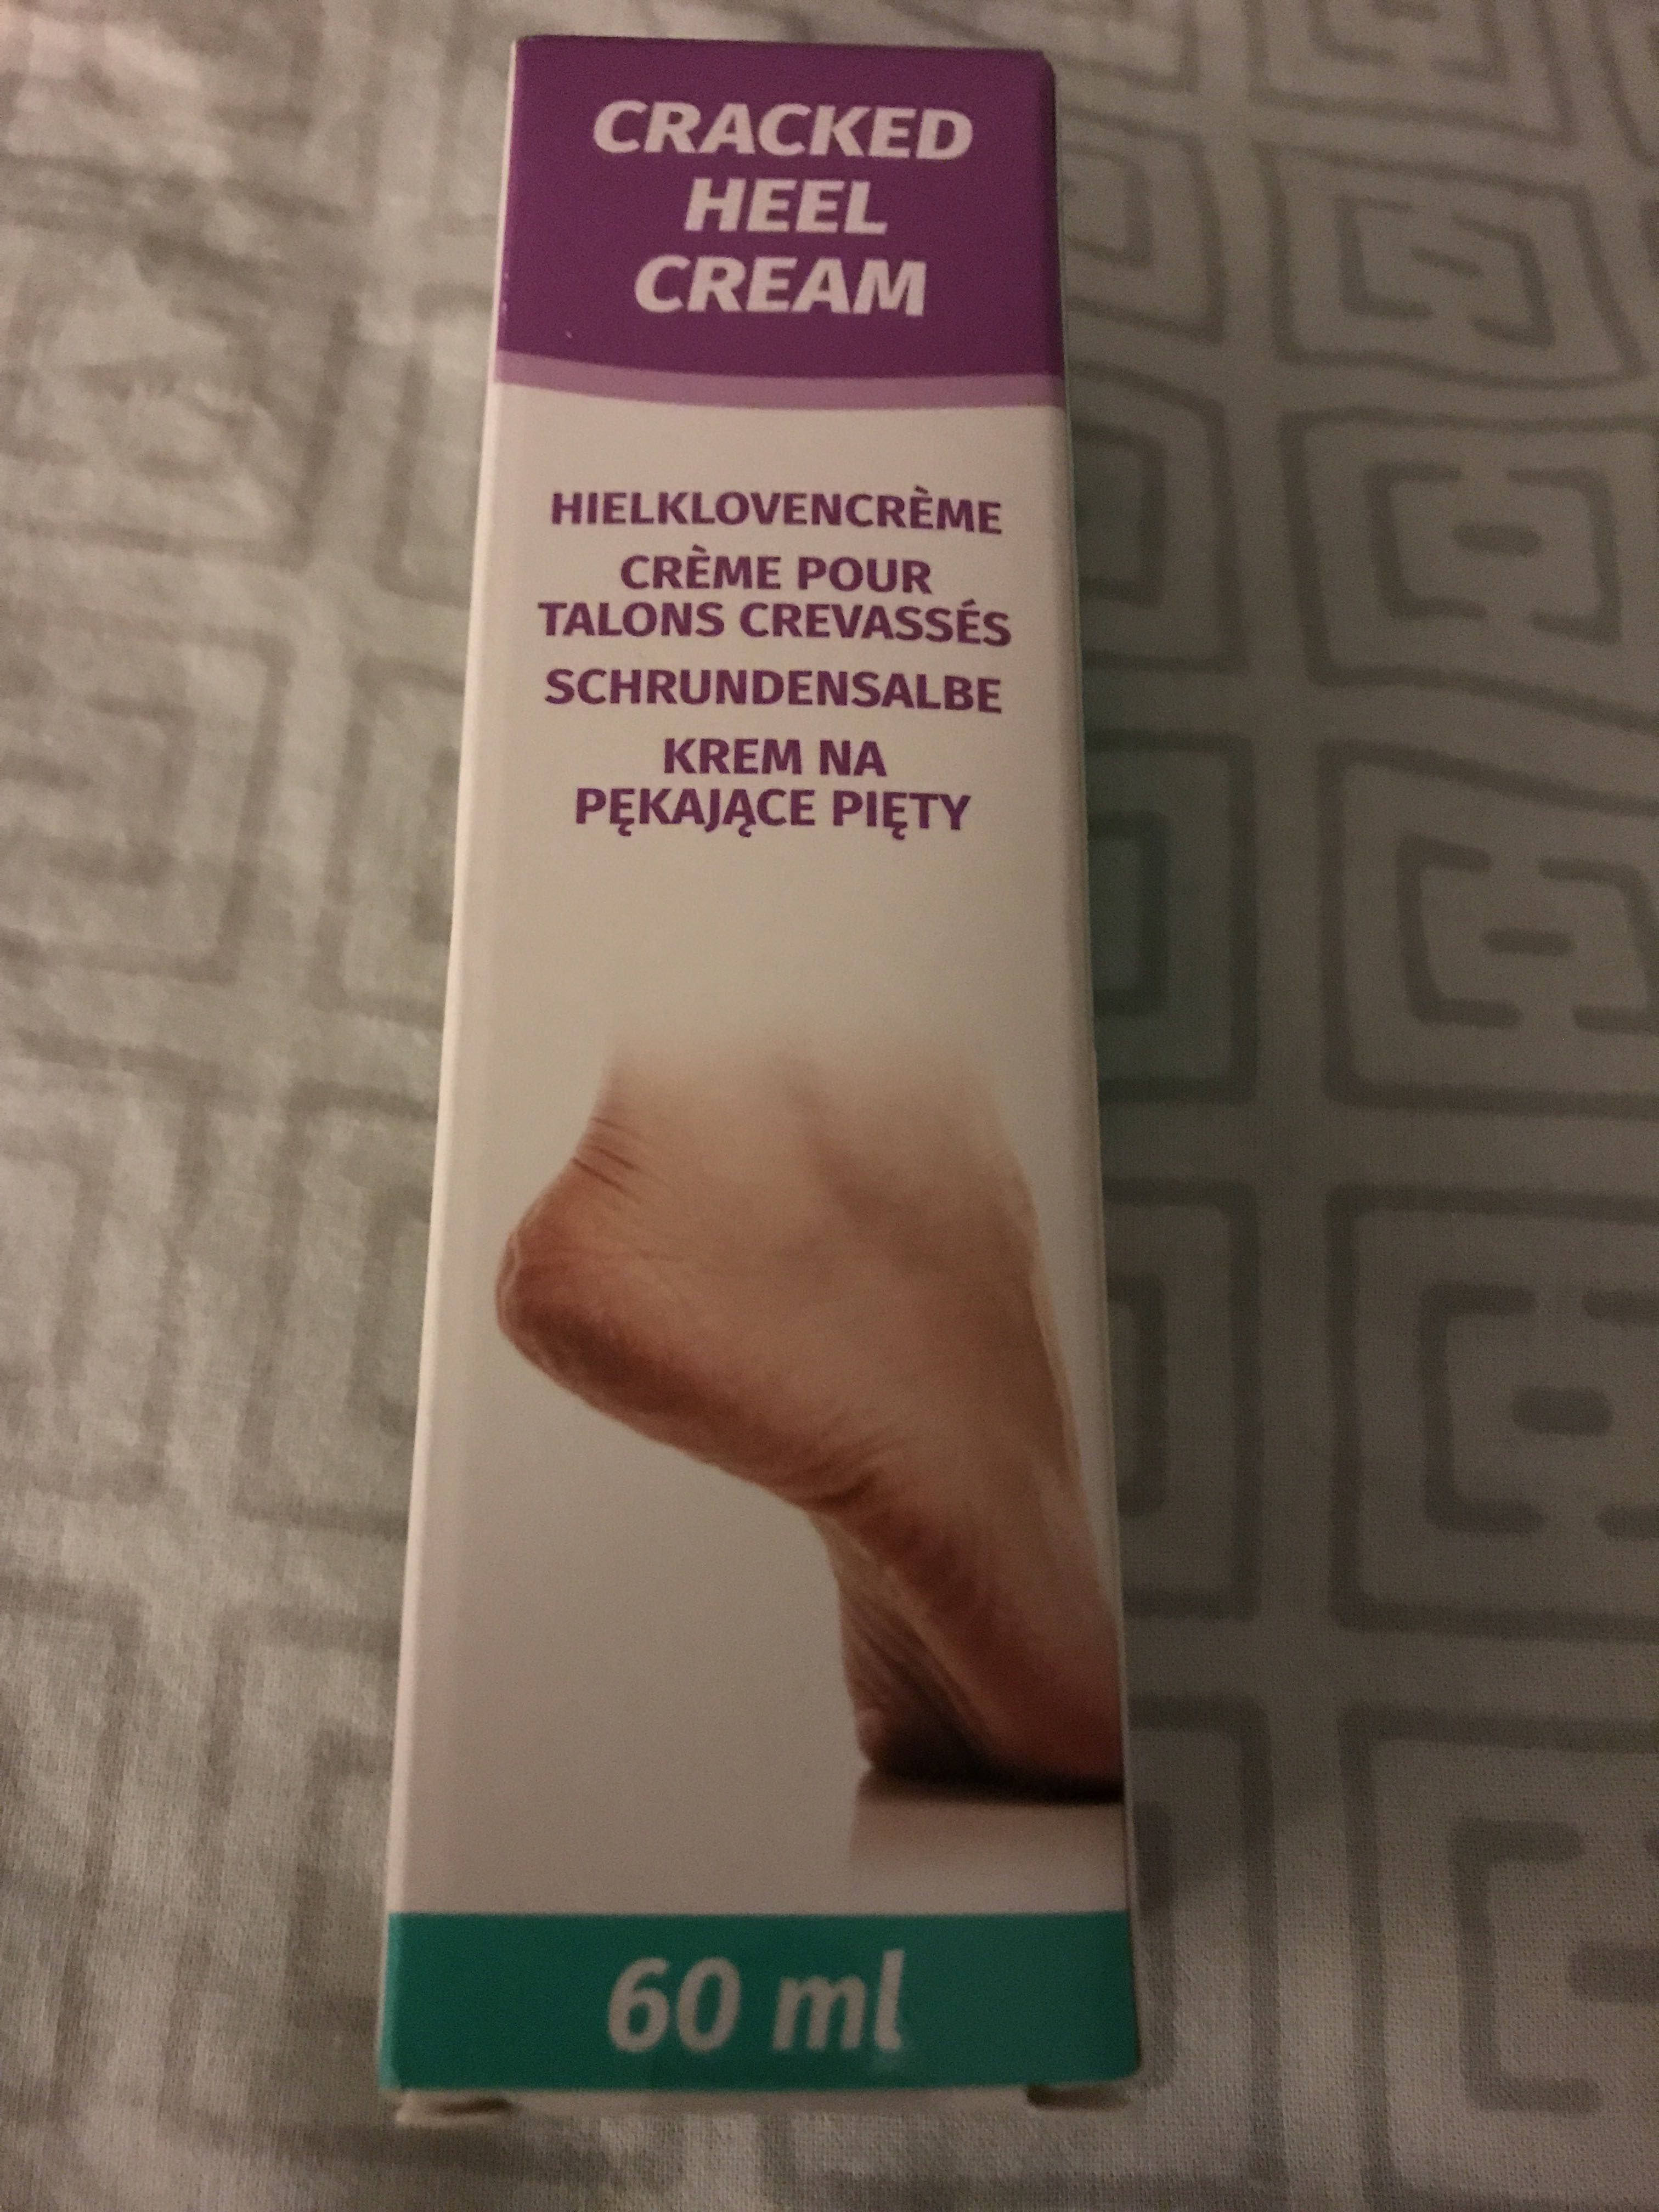 Crème pour talons crevassés - Product - fr